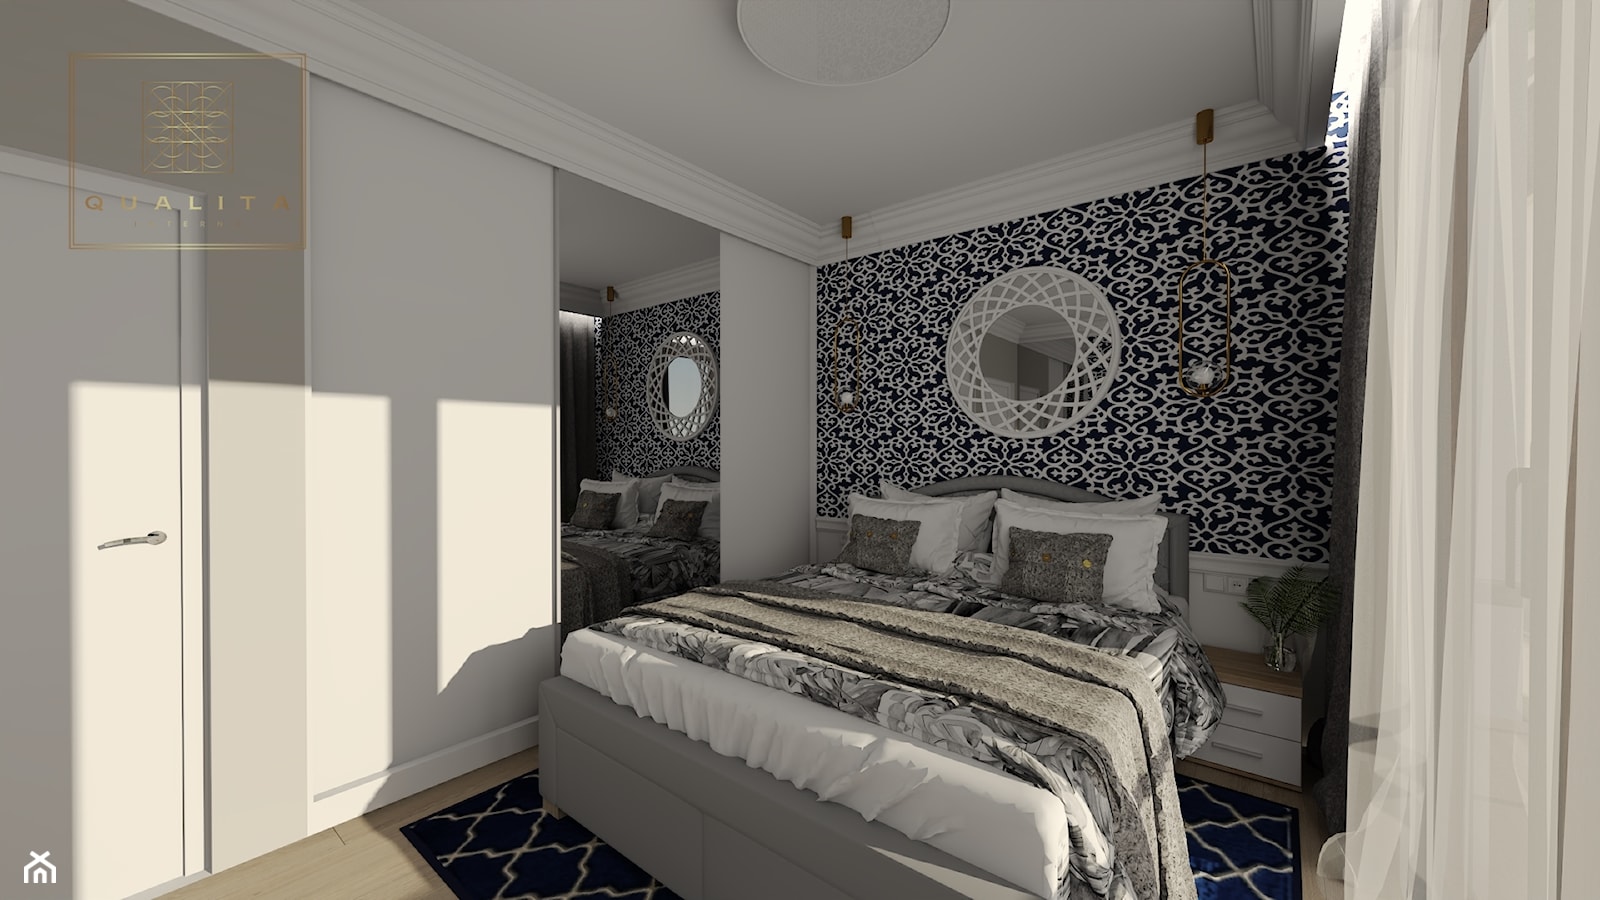 Sypialnia z listwami dekoracyjnymi przy suficie - zdjęcie od Qualita Interno - Homebook